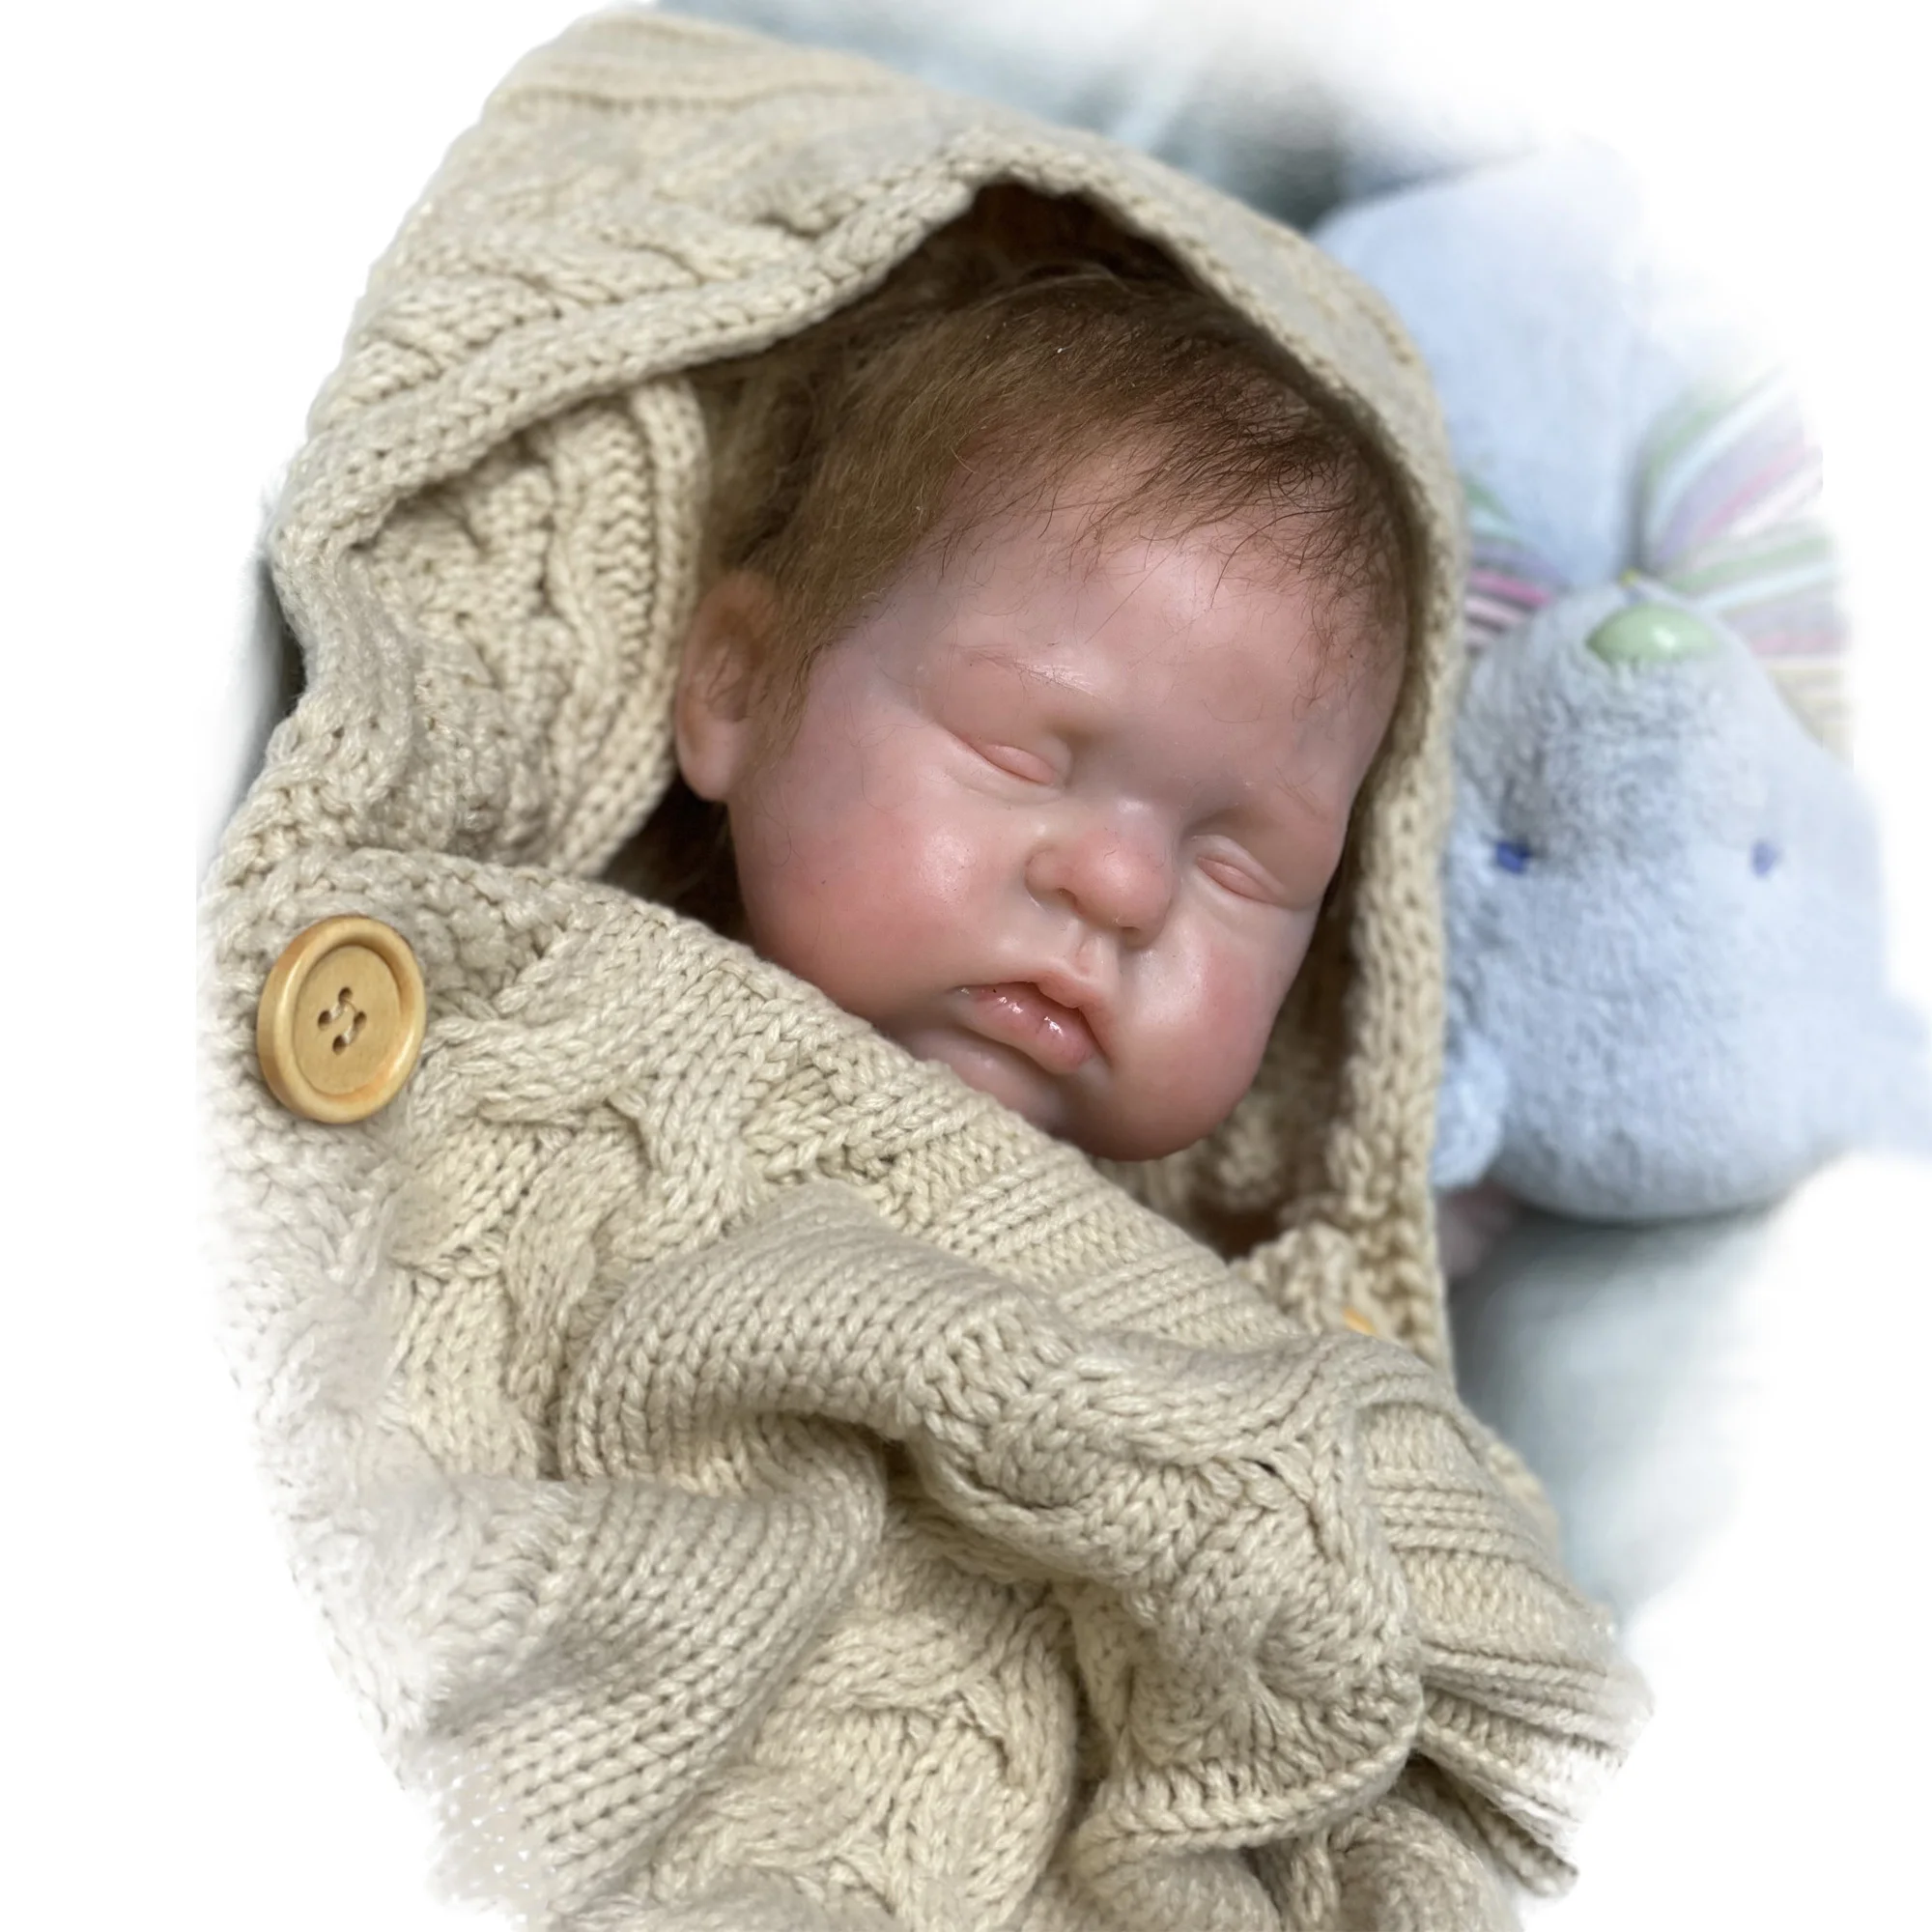 Bebê de silicone sólido - realista - 40 cm - sem emendas - maravilhosa!!! -  Bebê Realista - Formas e Assadeiras - Magazine Luiza